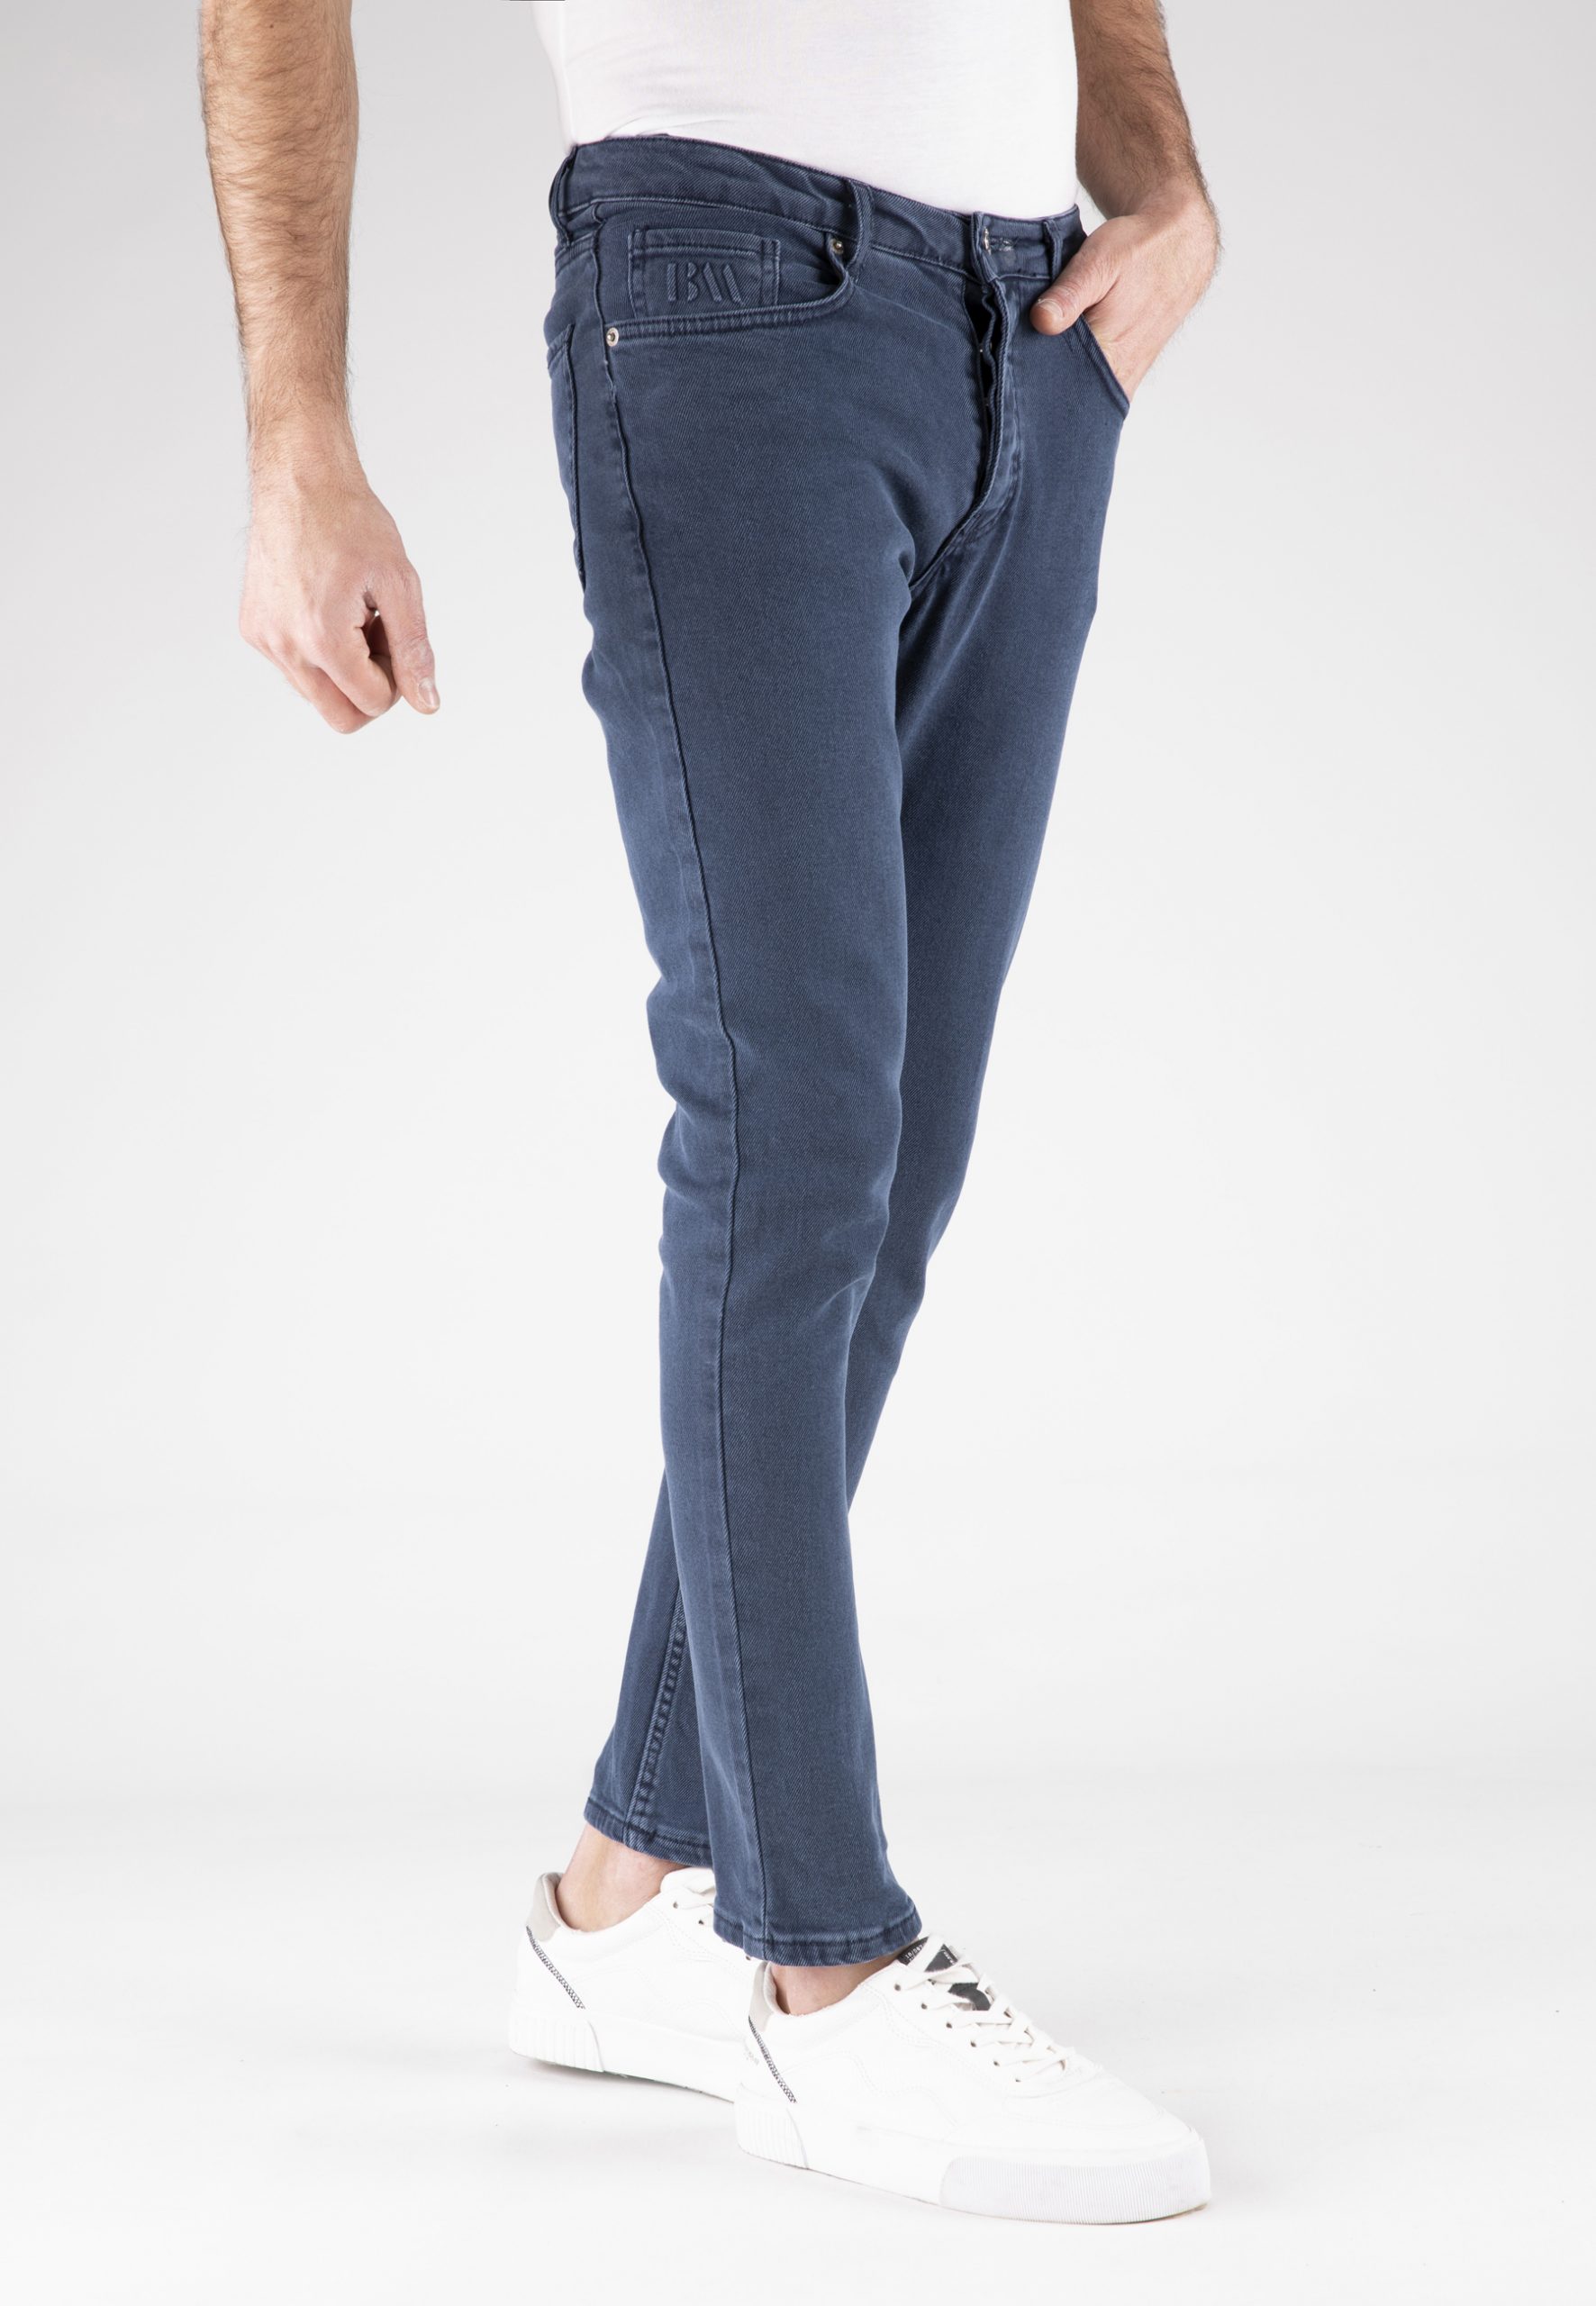 Men's Jeans - Basics&More